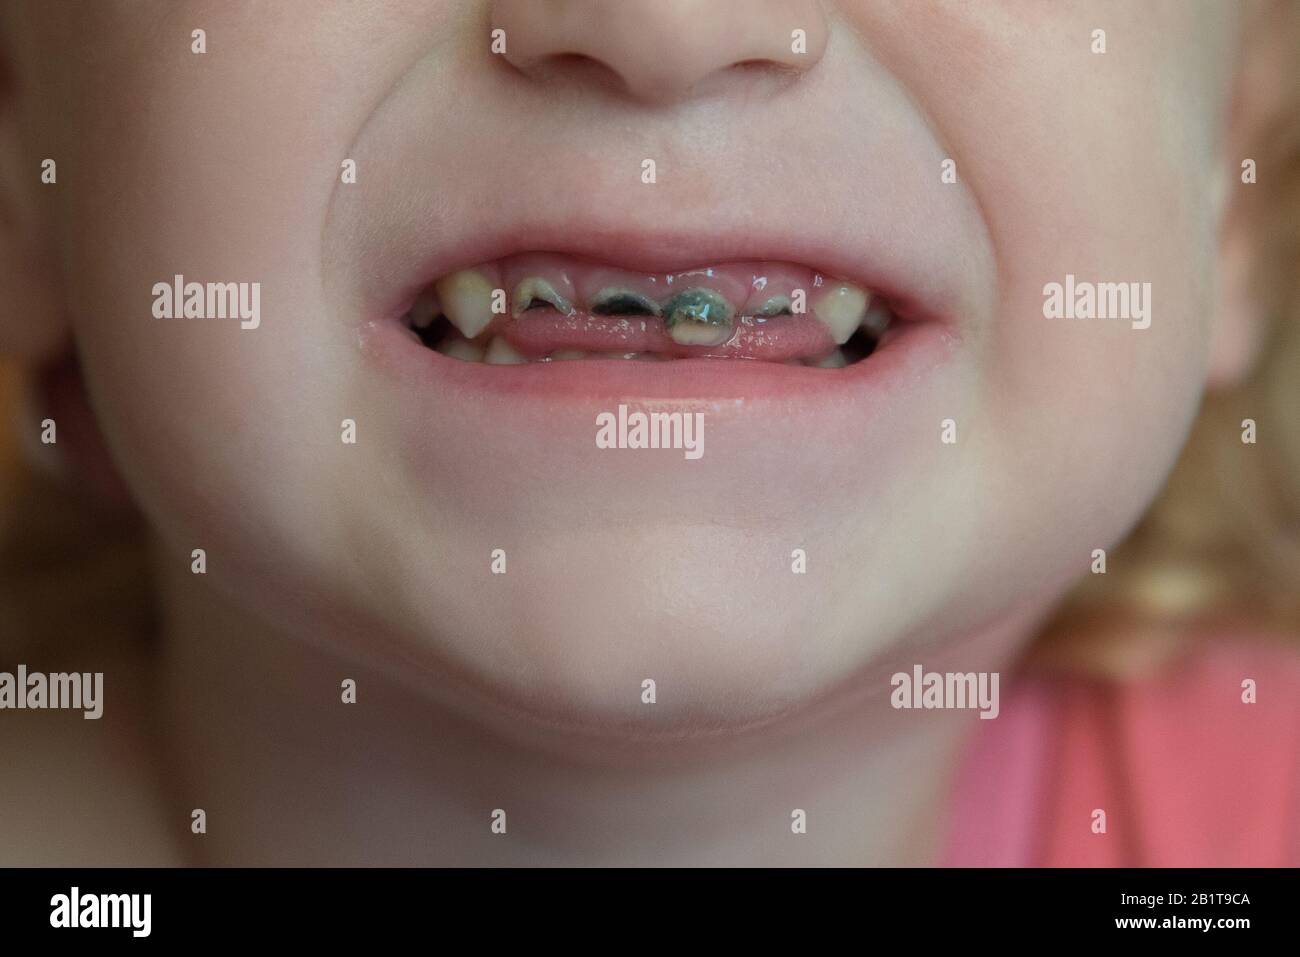 Les dents avant du bébé ne sont pas saines avec une plaque noire et des caries Banque D'Images